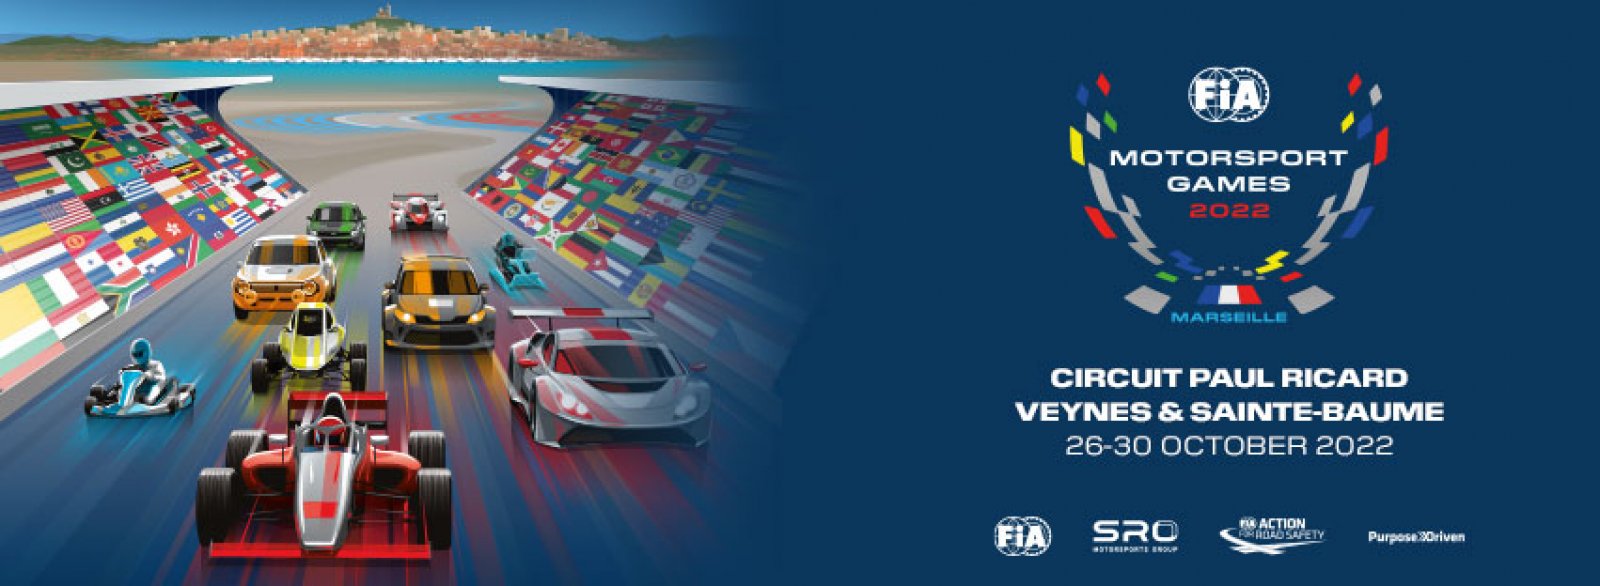 FIA Motorsport Games Image